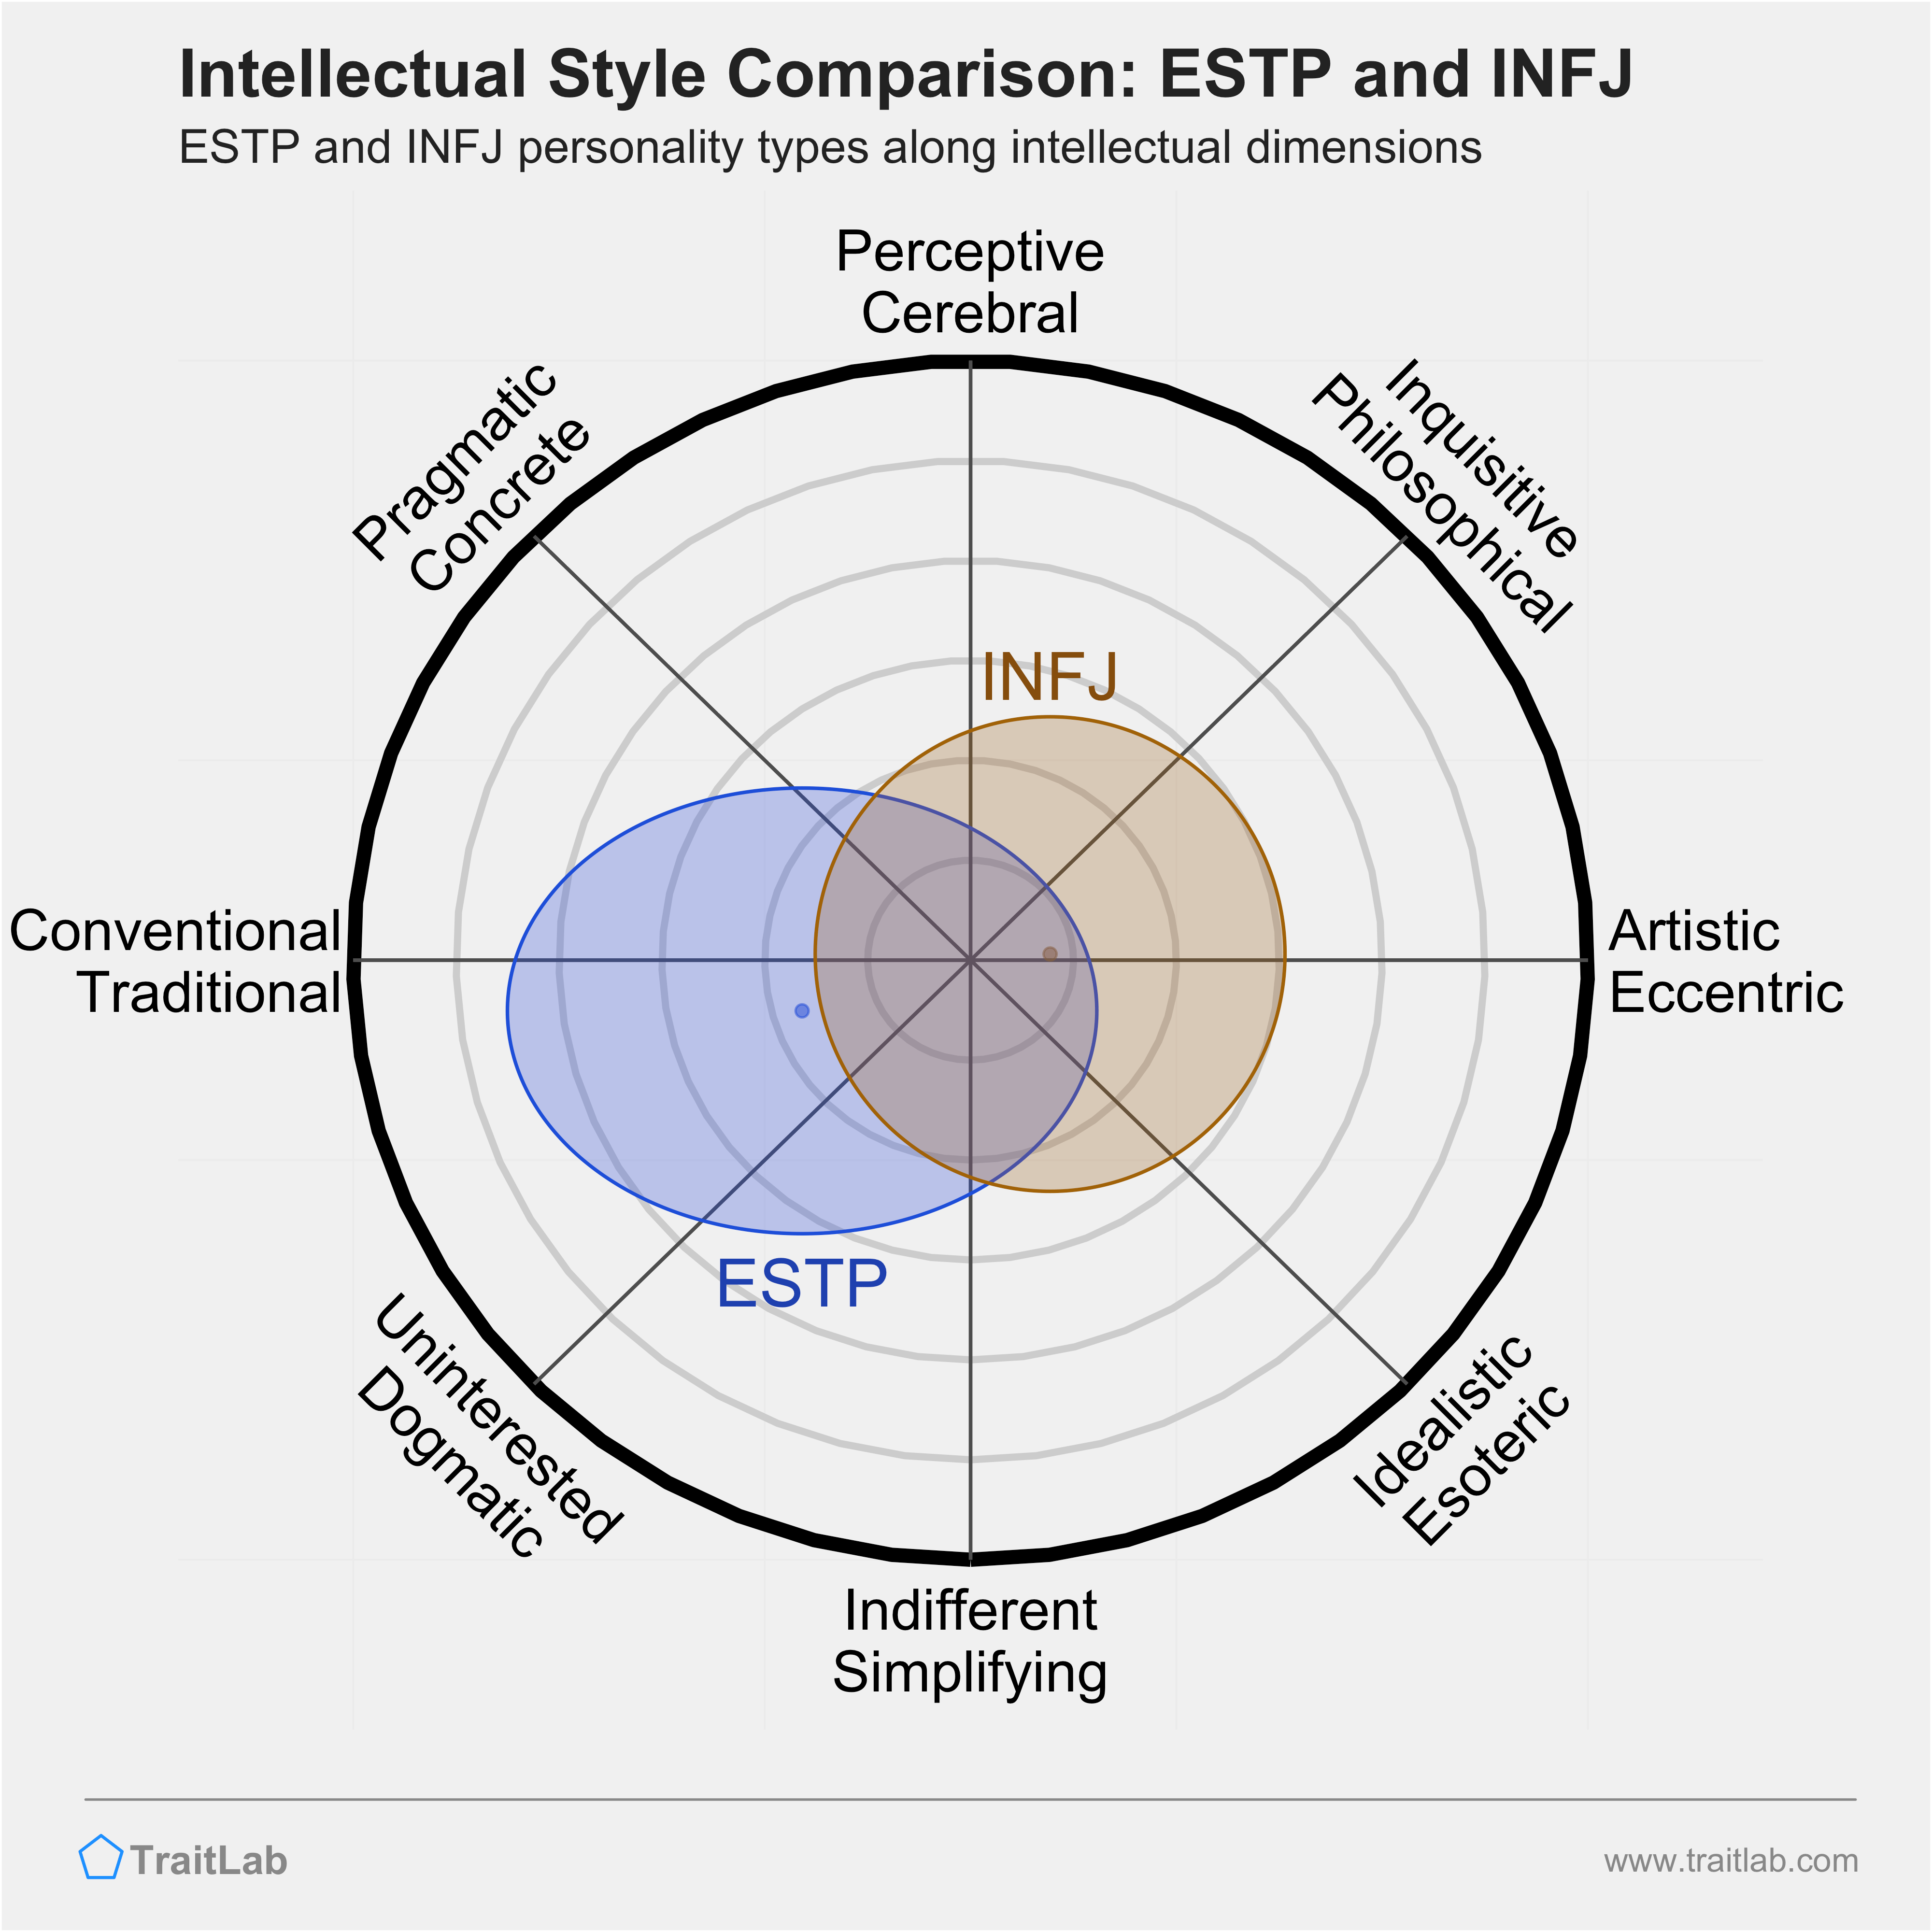 ESTP and INFJ comparison across intellectual dimensions